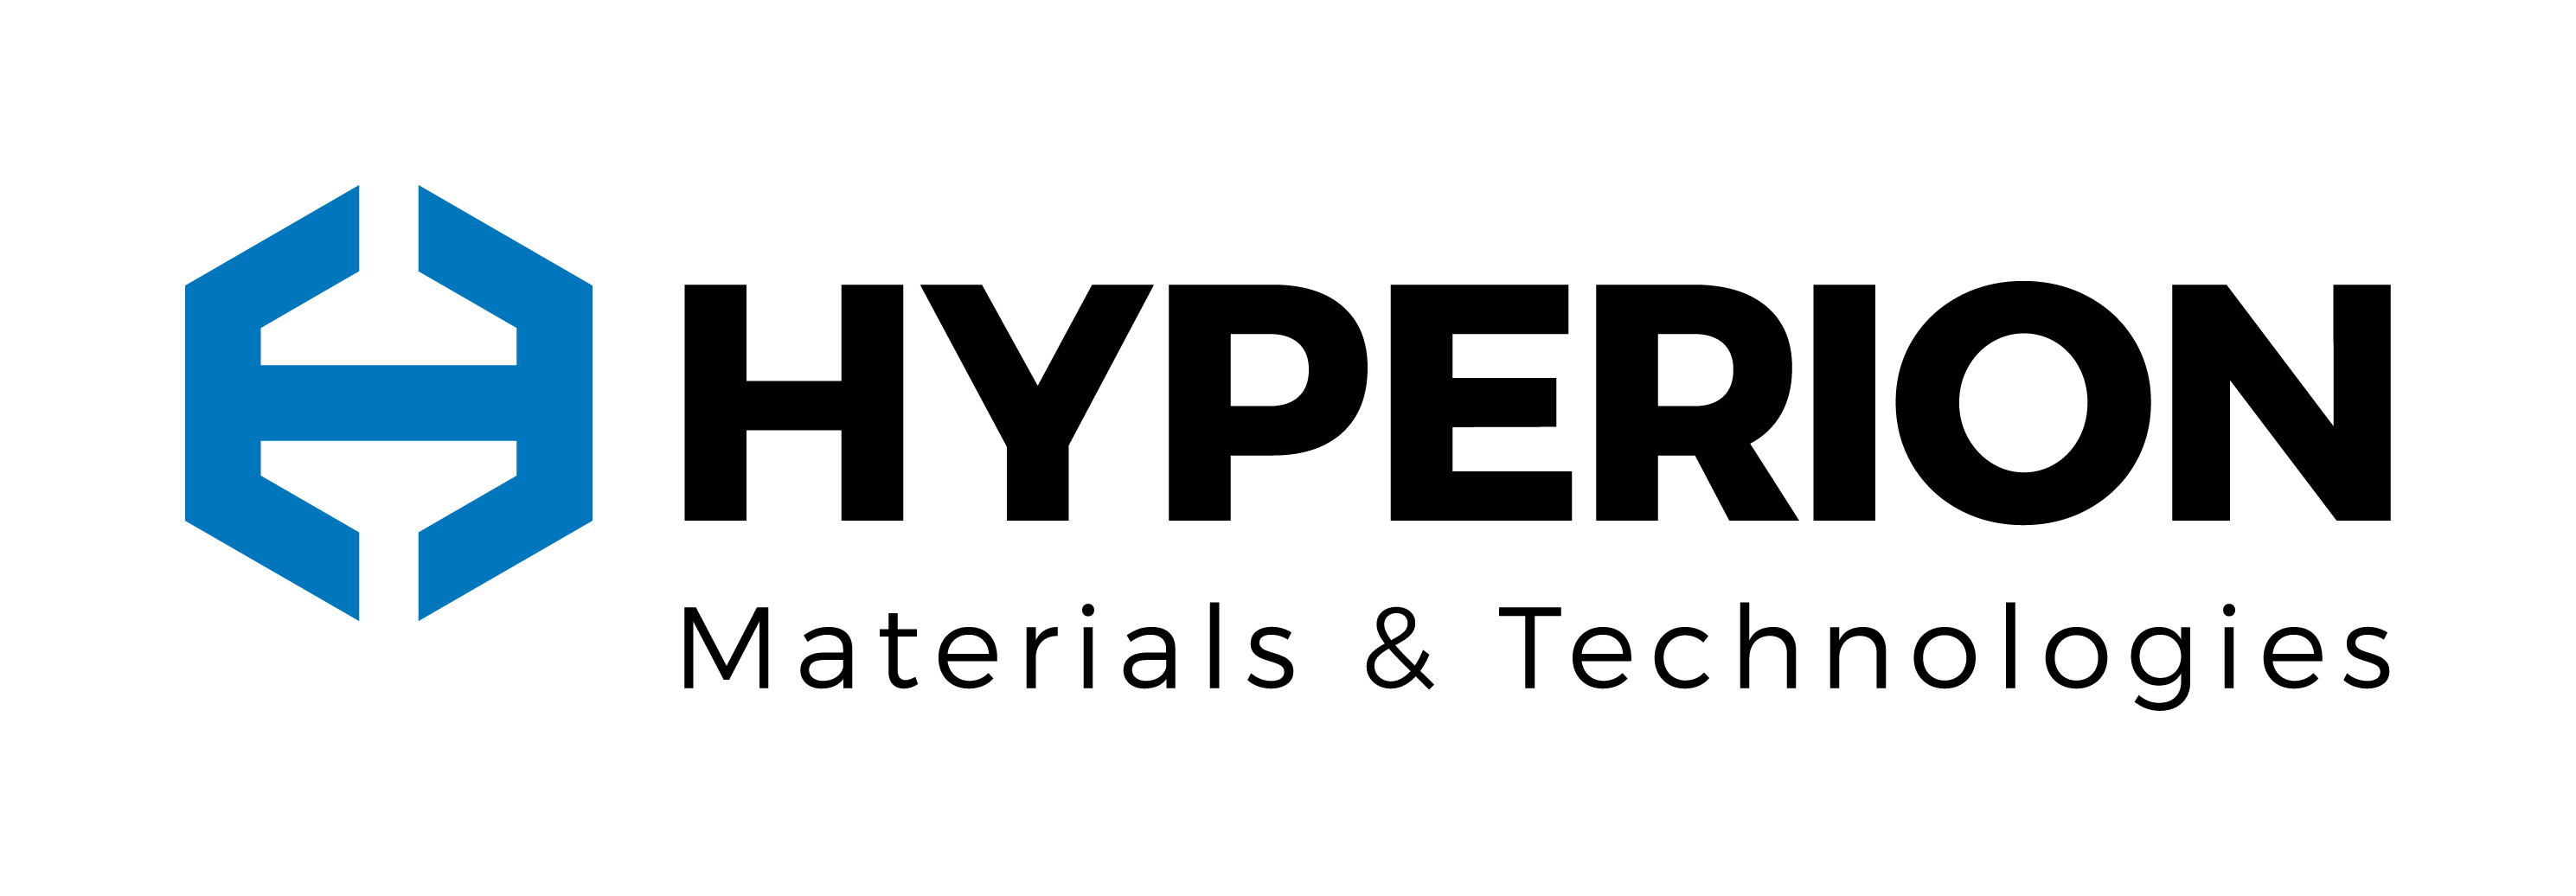 Hyperion Materials & Technologies logo